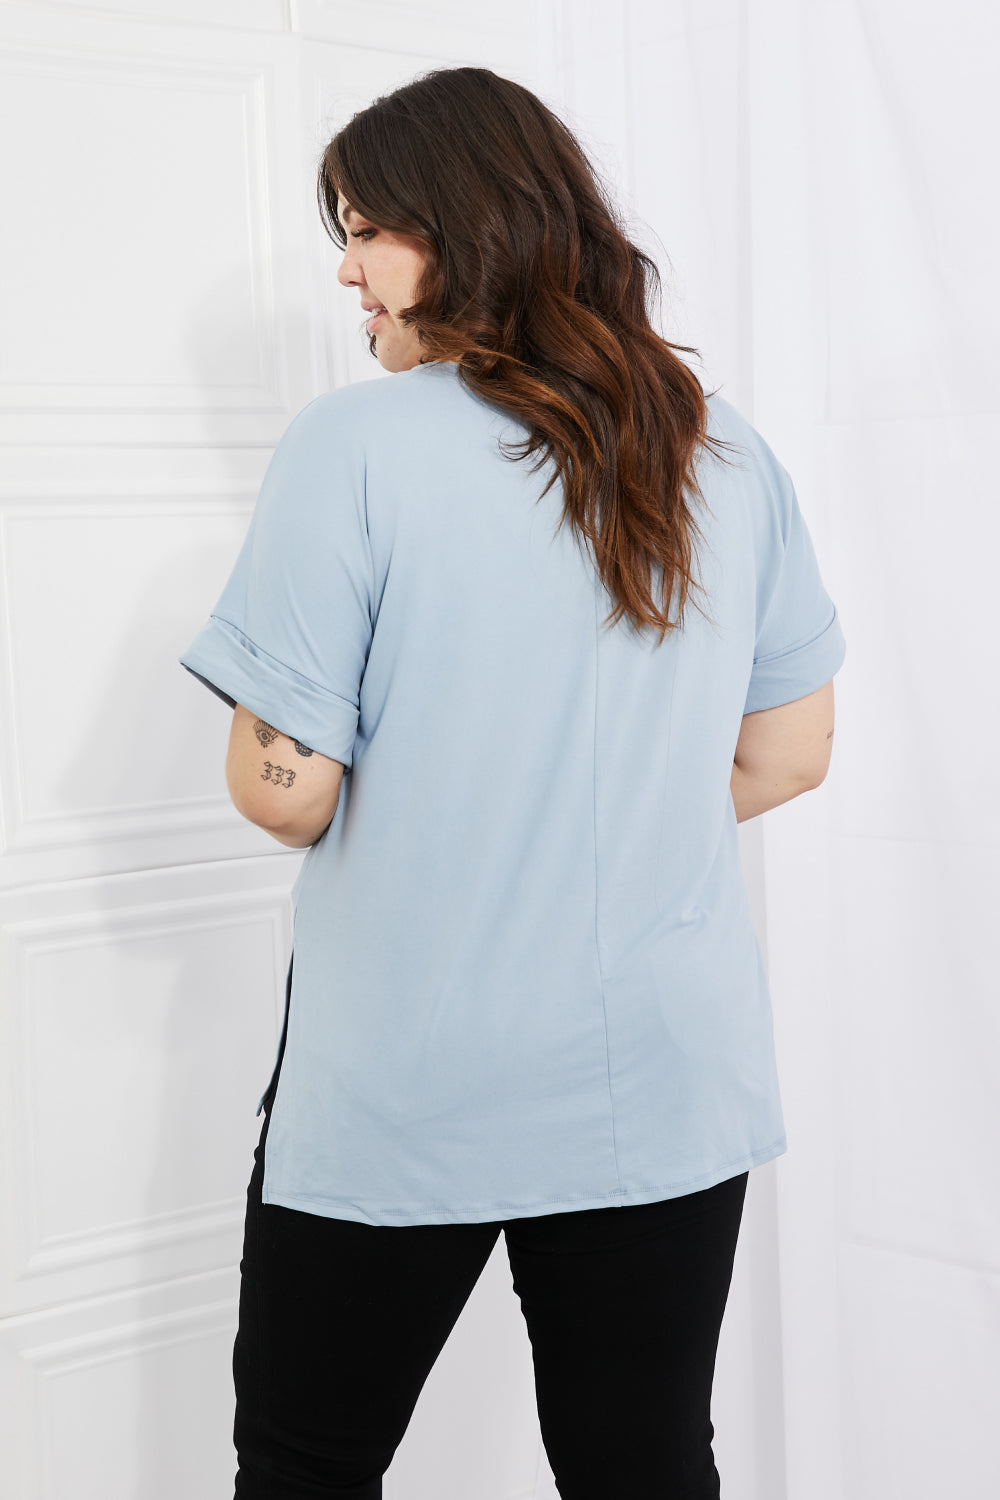 Cotton V-Neck Women's Plain Sky Blue T-Shirt plus size back